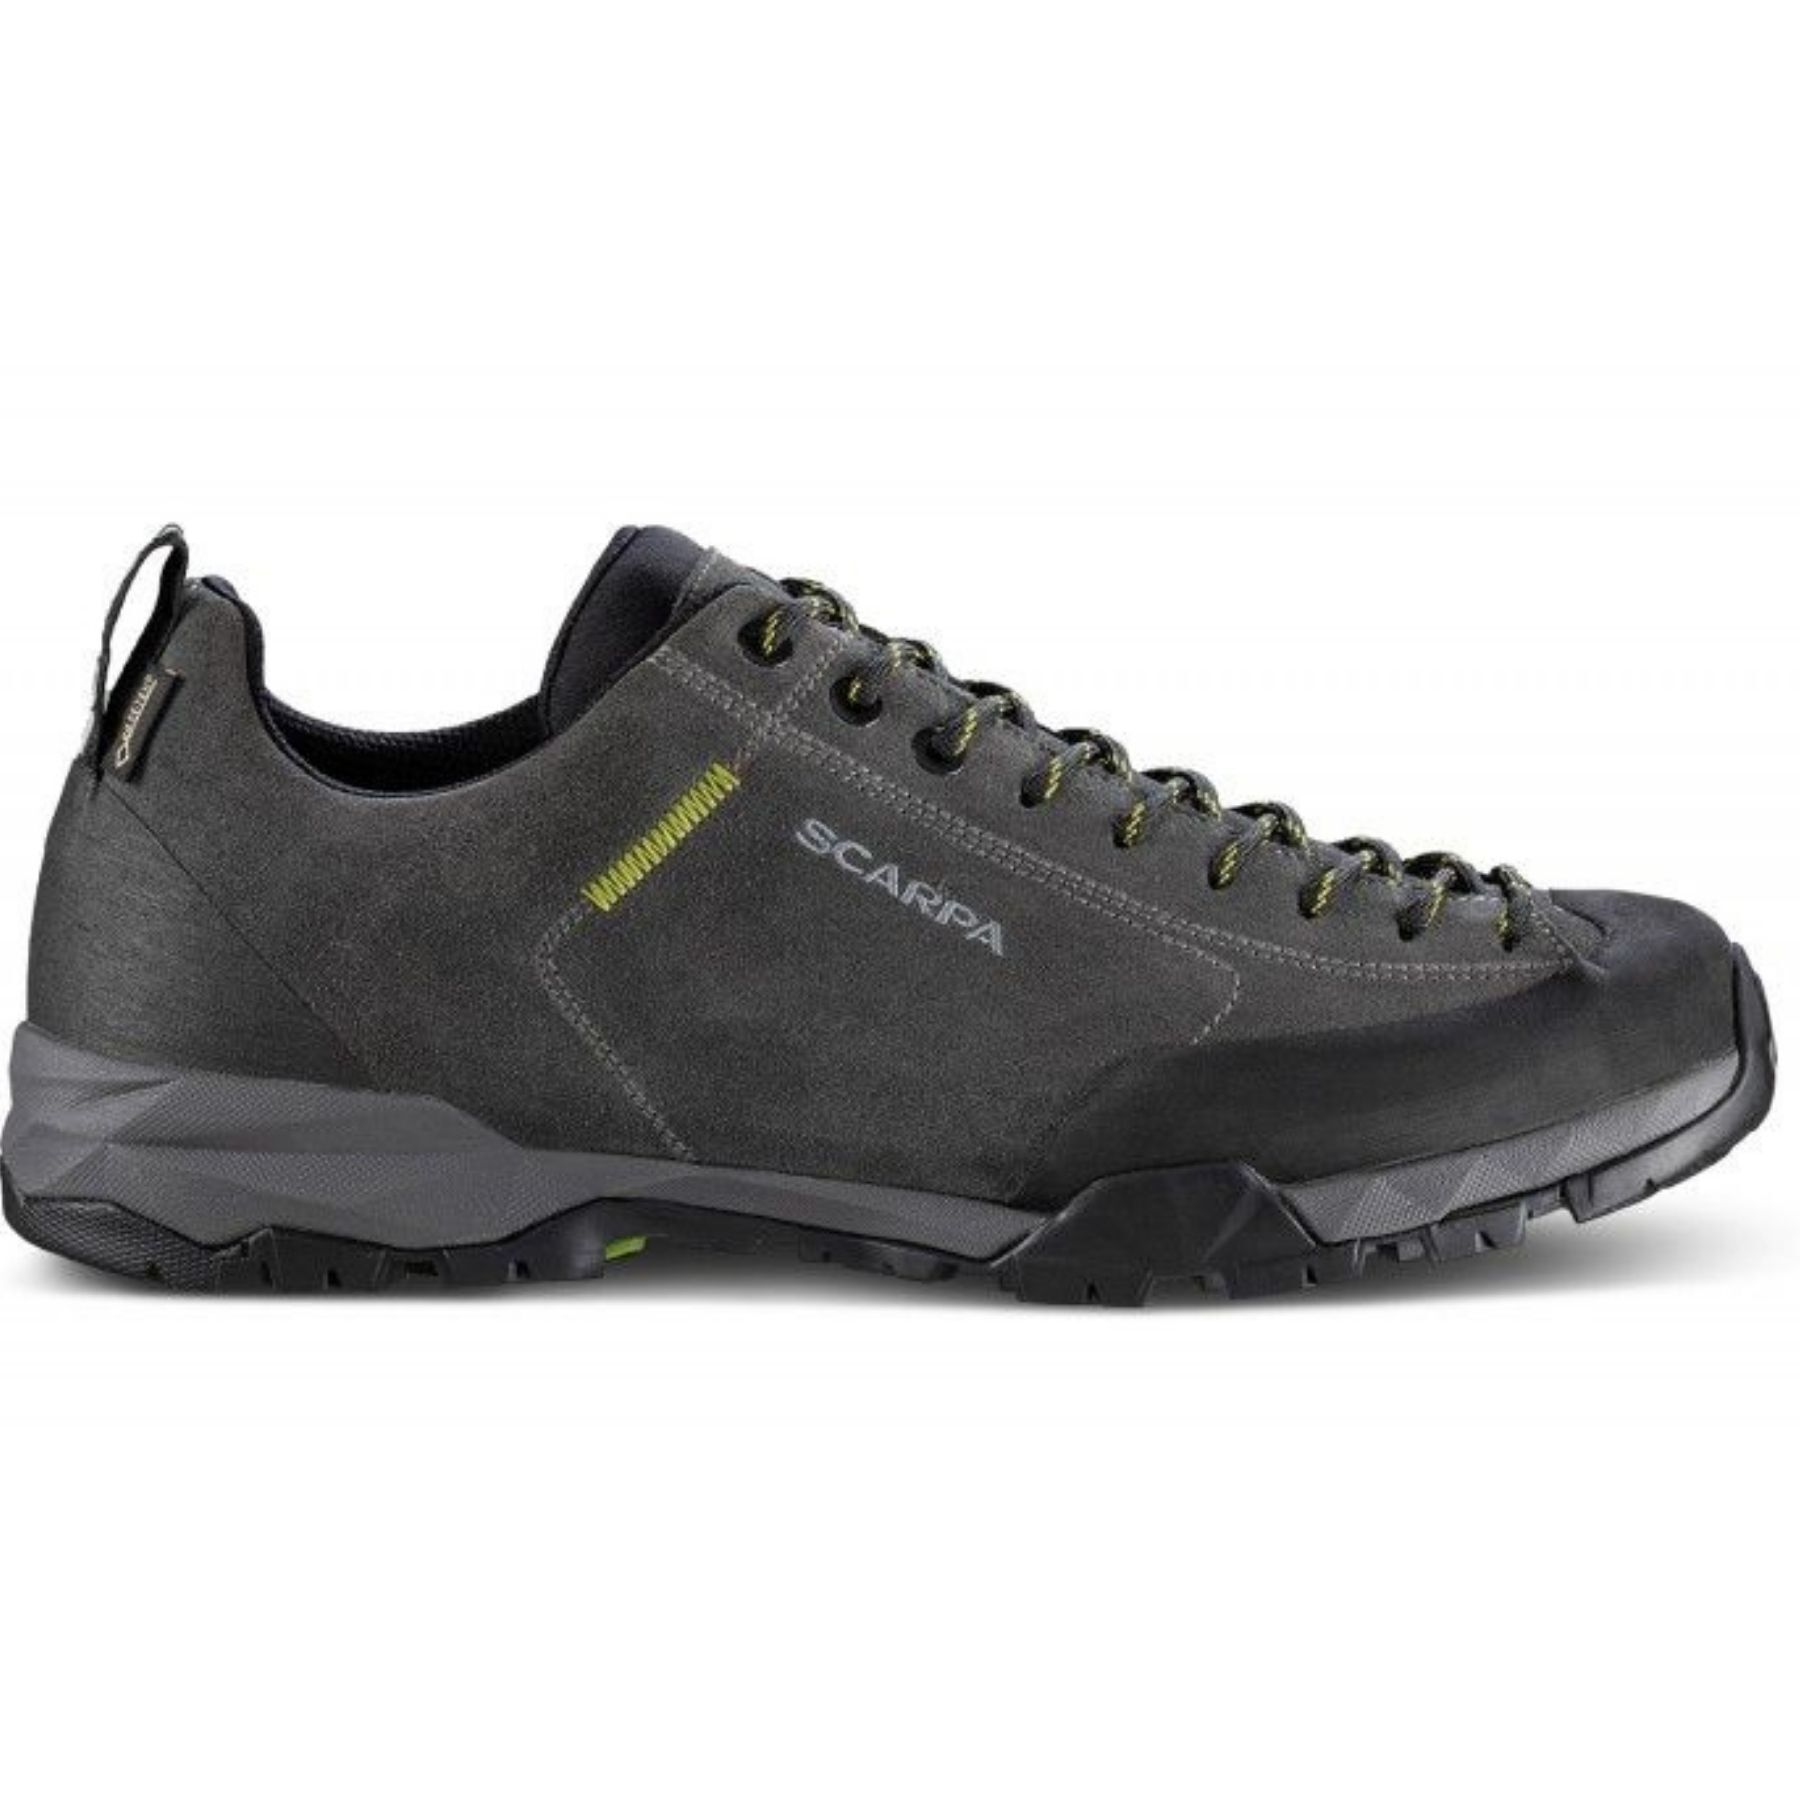 Scarpa Mojito Trail GTX - Hiking Boots - Men's